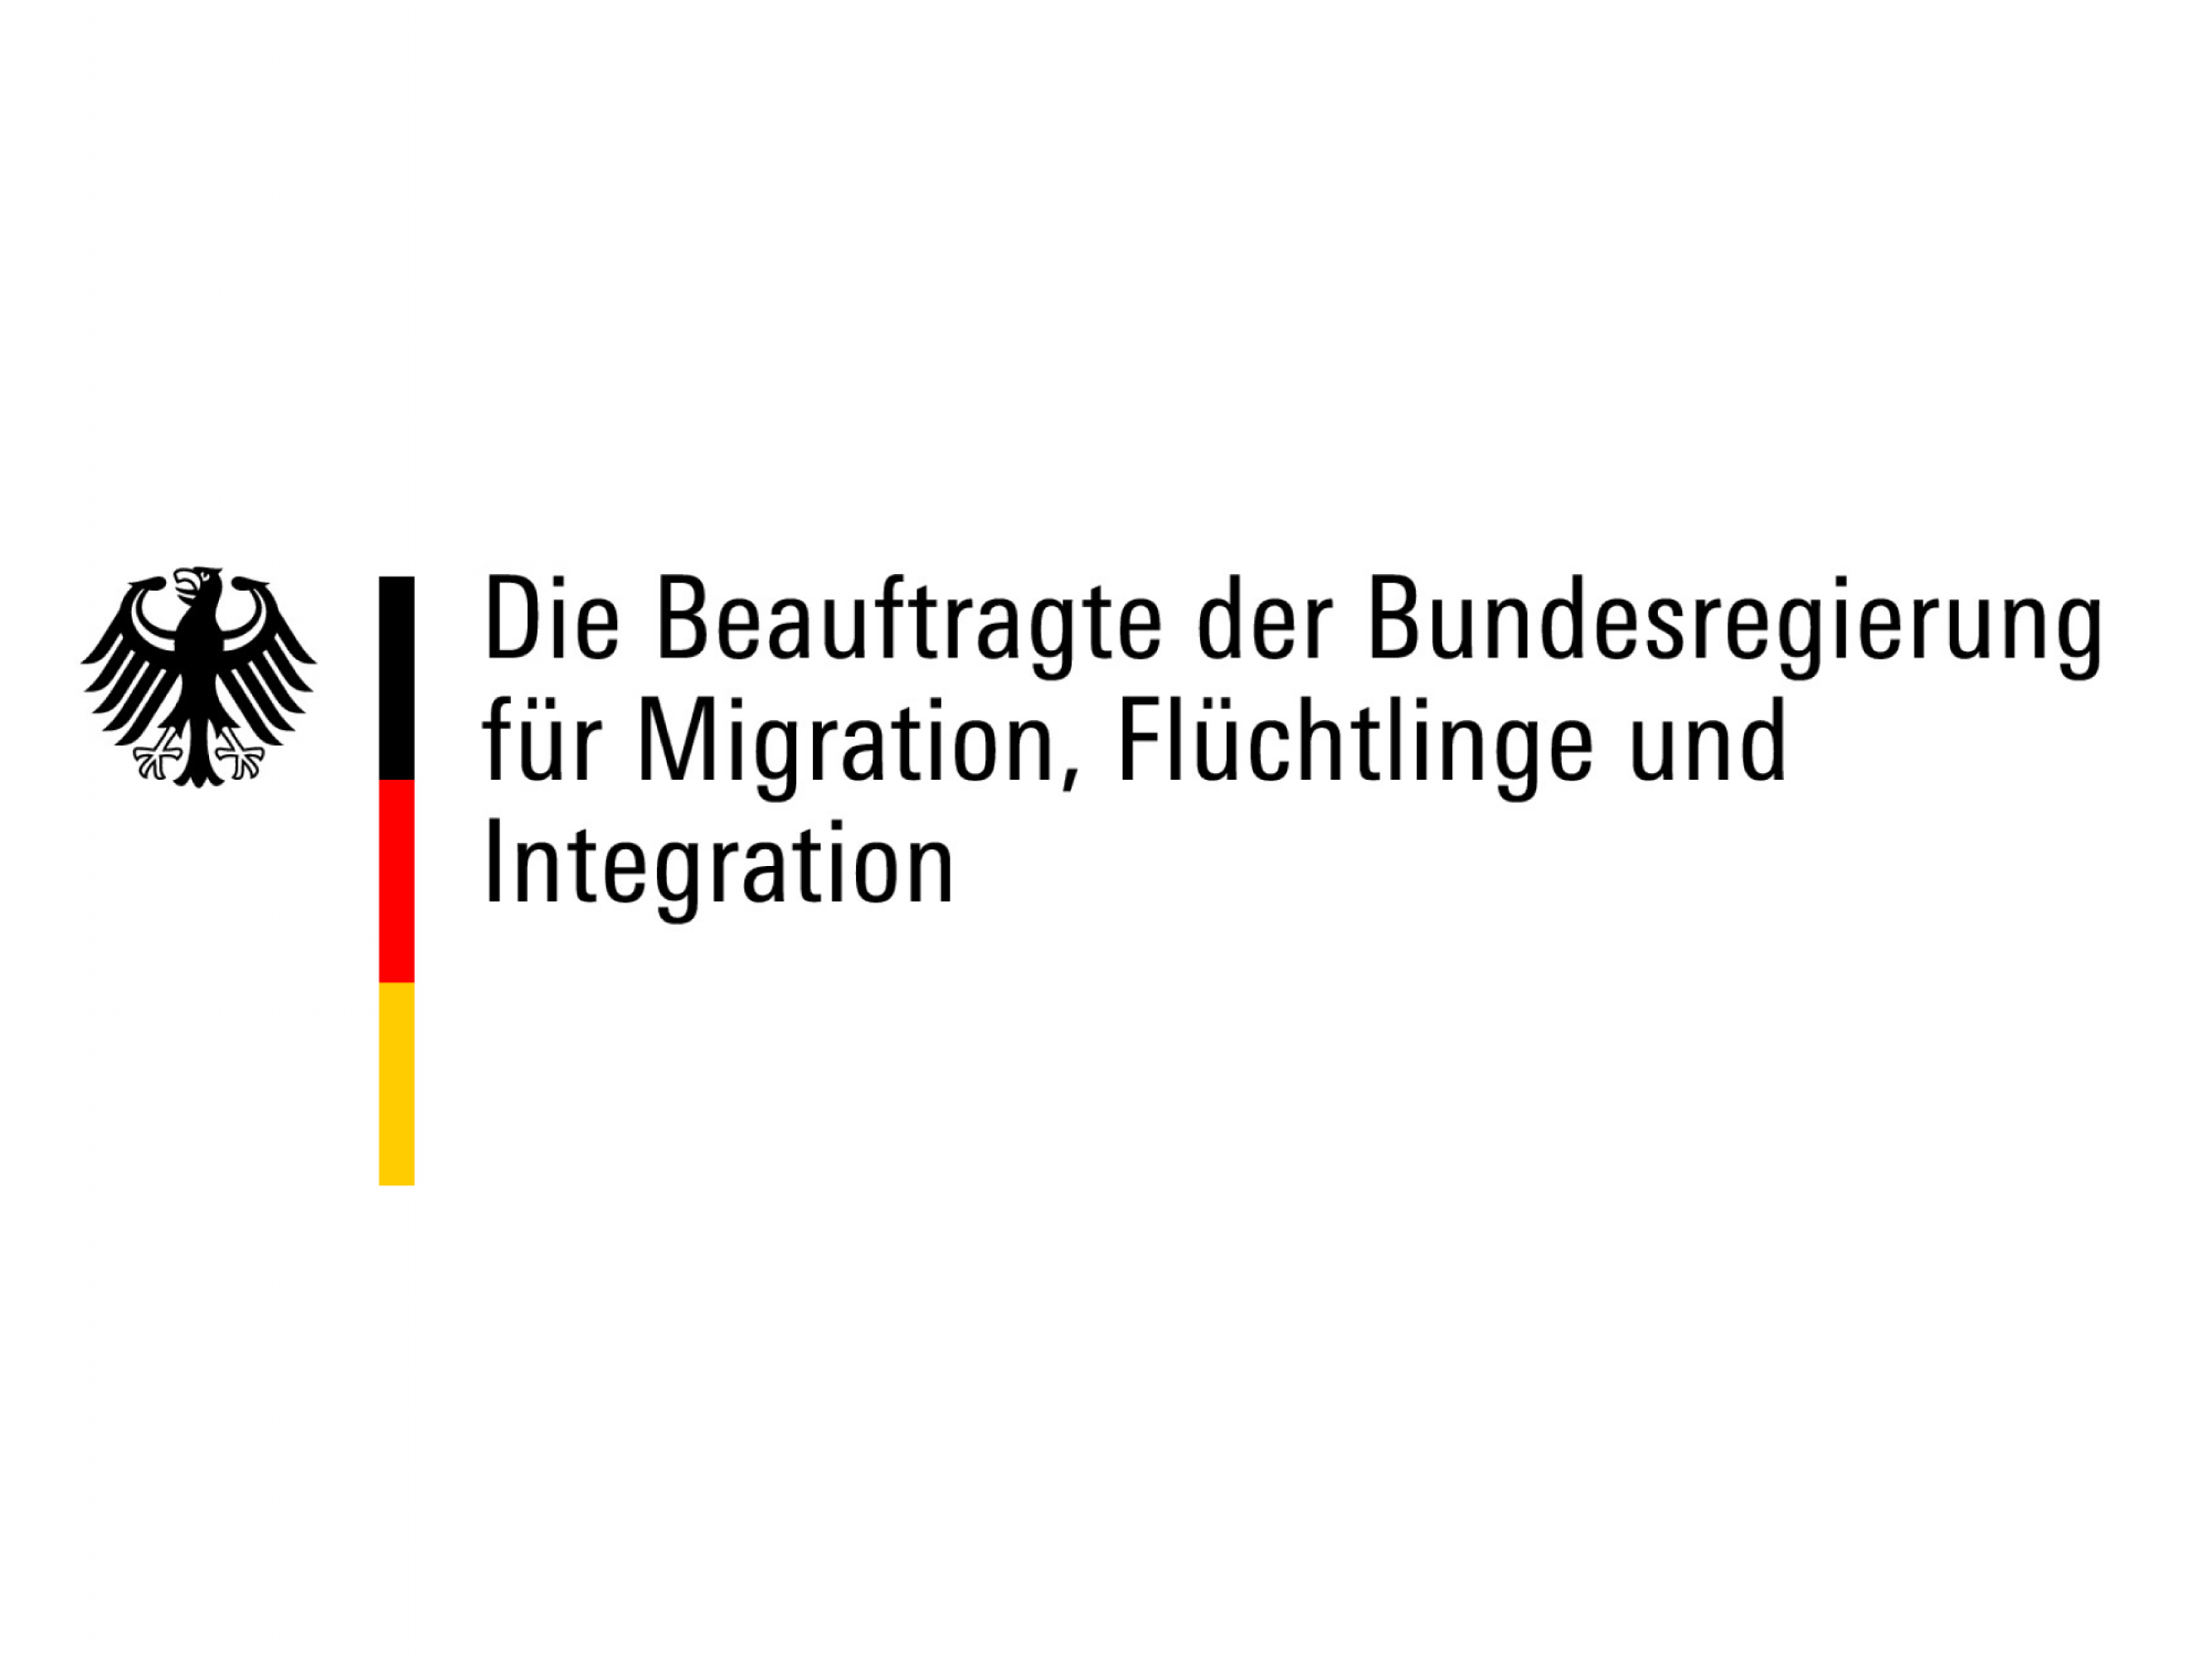 Logo der Beauftragten der Bundesregierung für Migration, Flüchtlinge und Integration